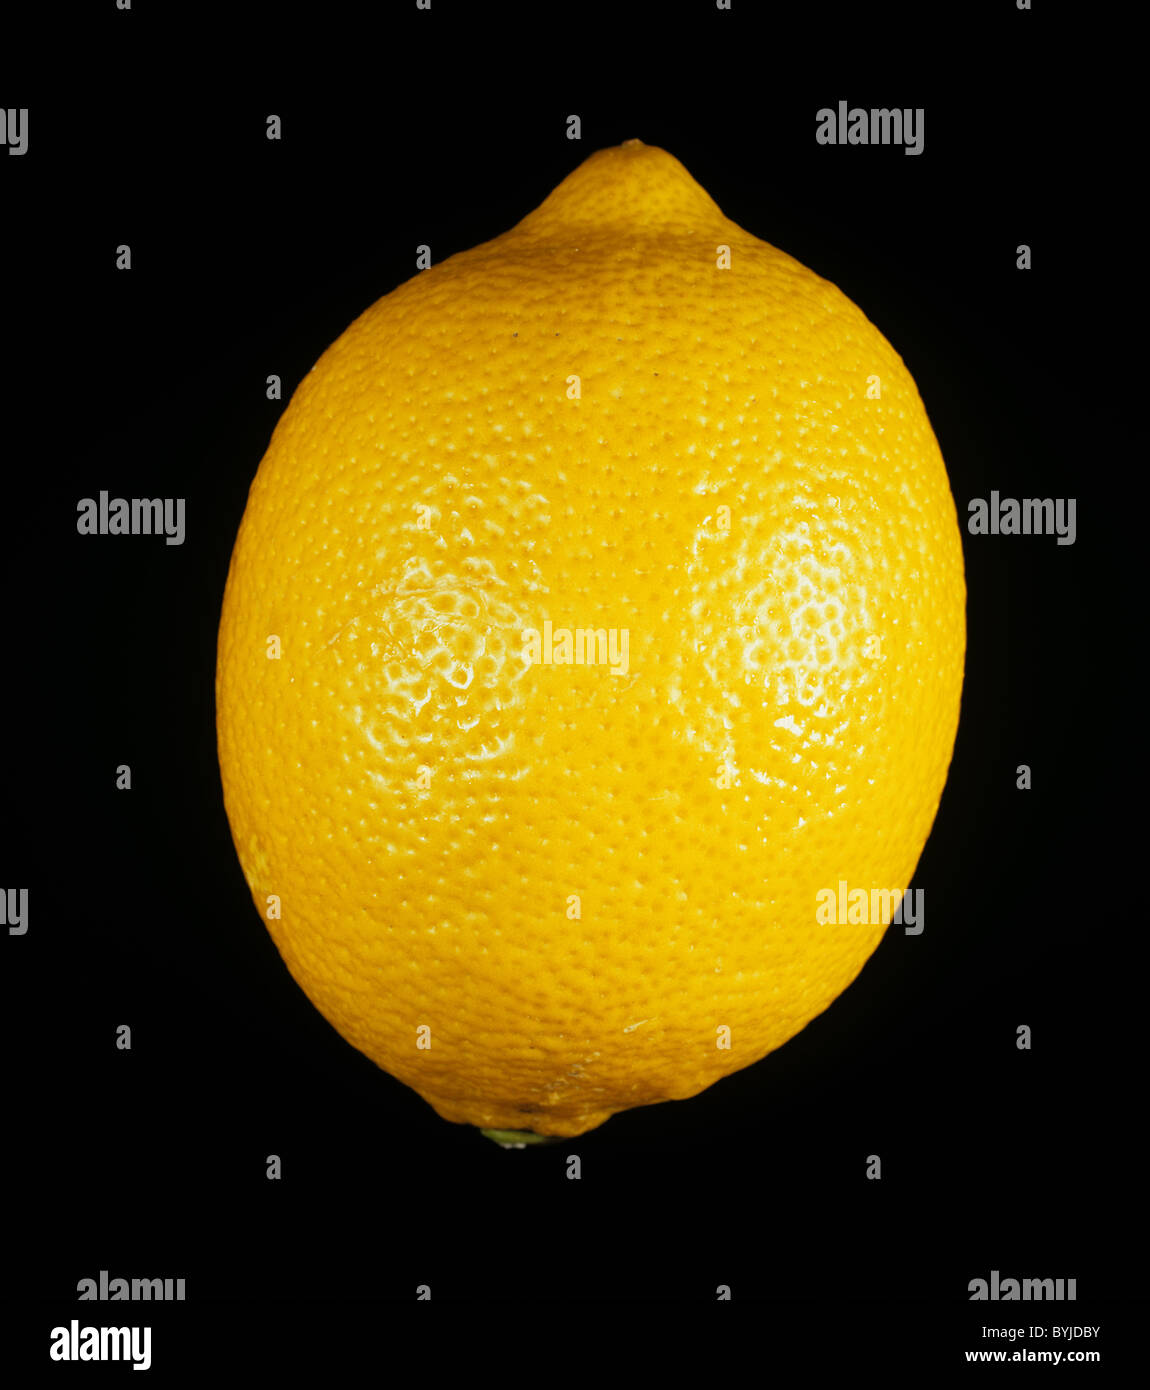 Whole citrus fruit lemon variety Eureka Stock Photo